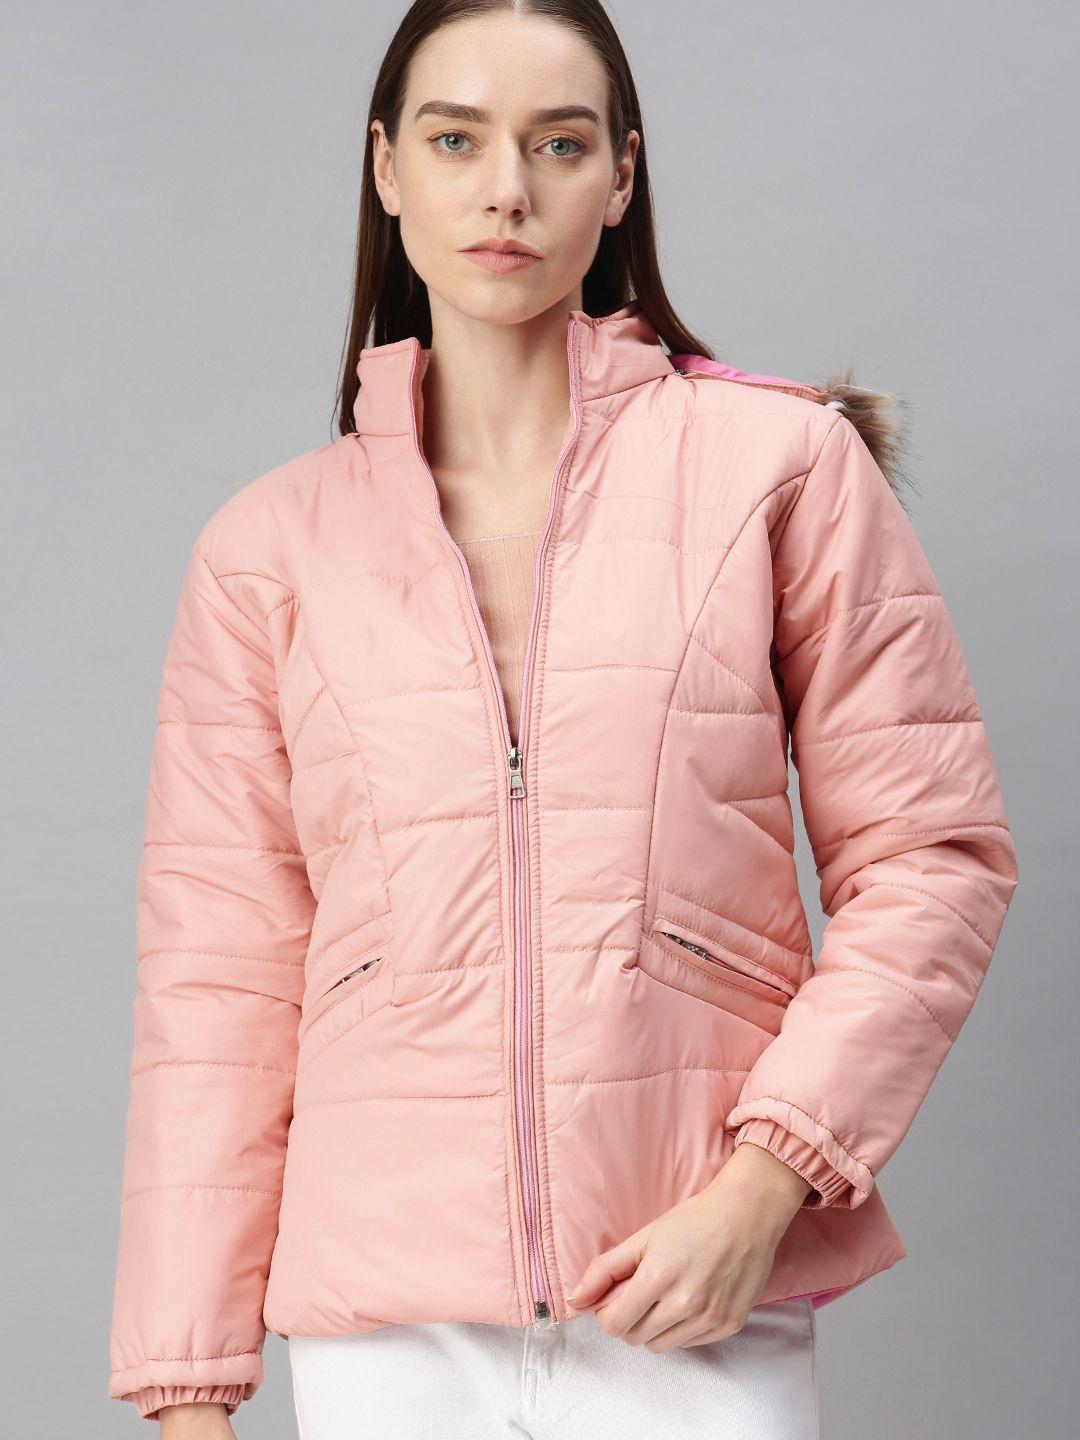 voxati women pink open front jacket